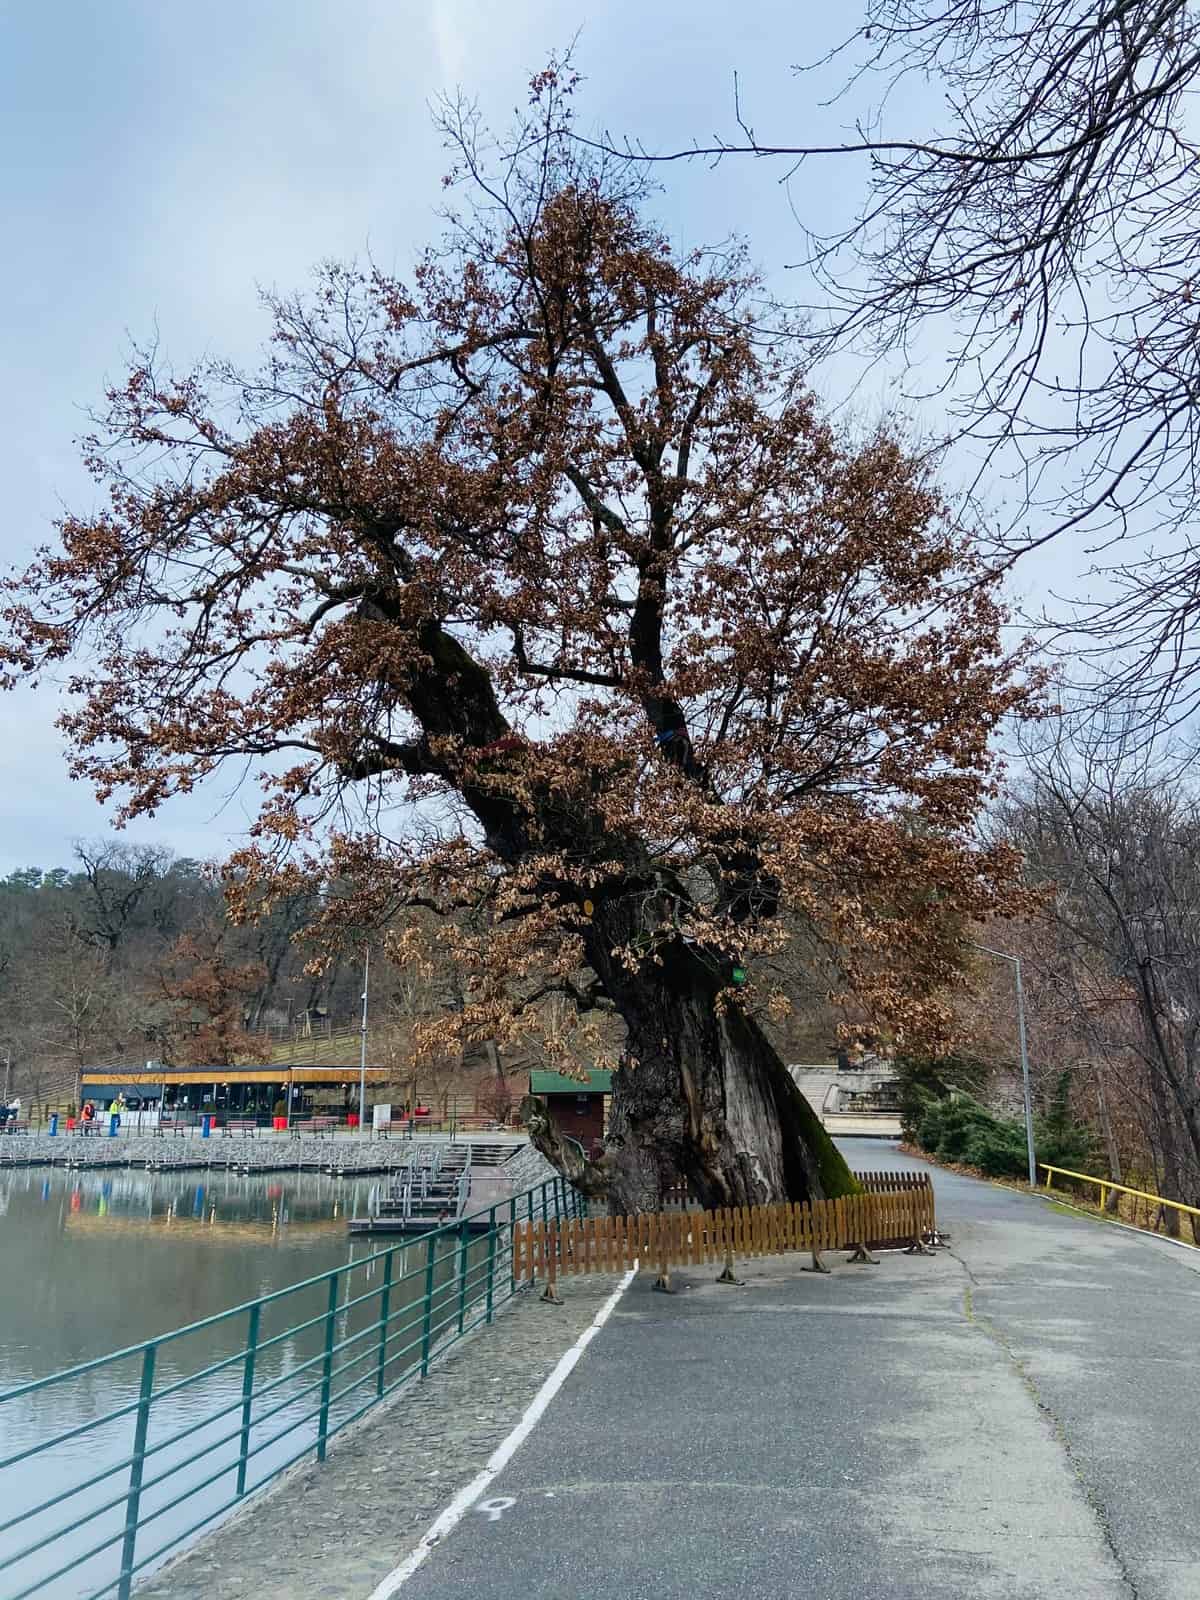 stejarul de peste 600 de ani de la zoo, curățat și îngrijit de primărie - “este pregătit pentru sezonul rece”